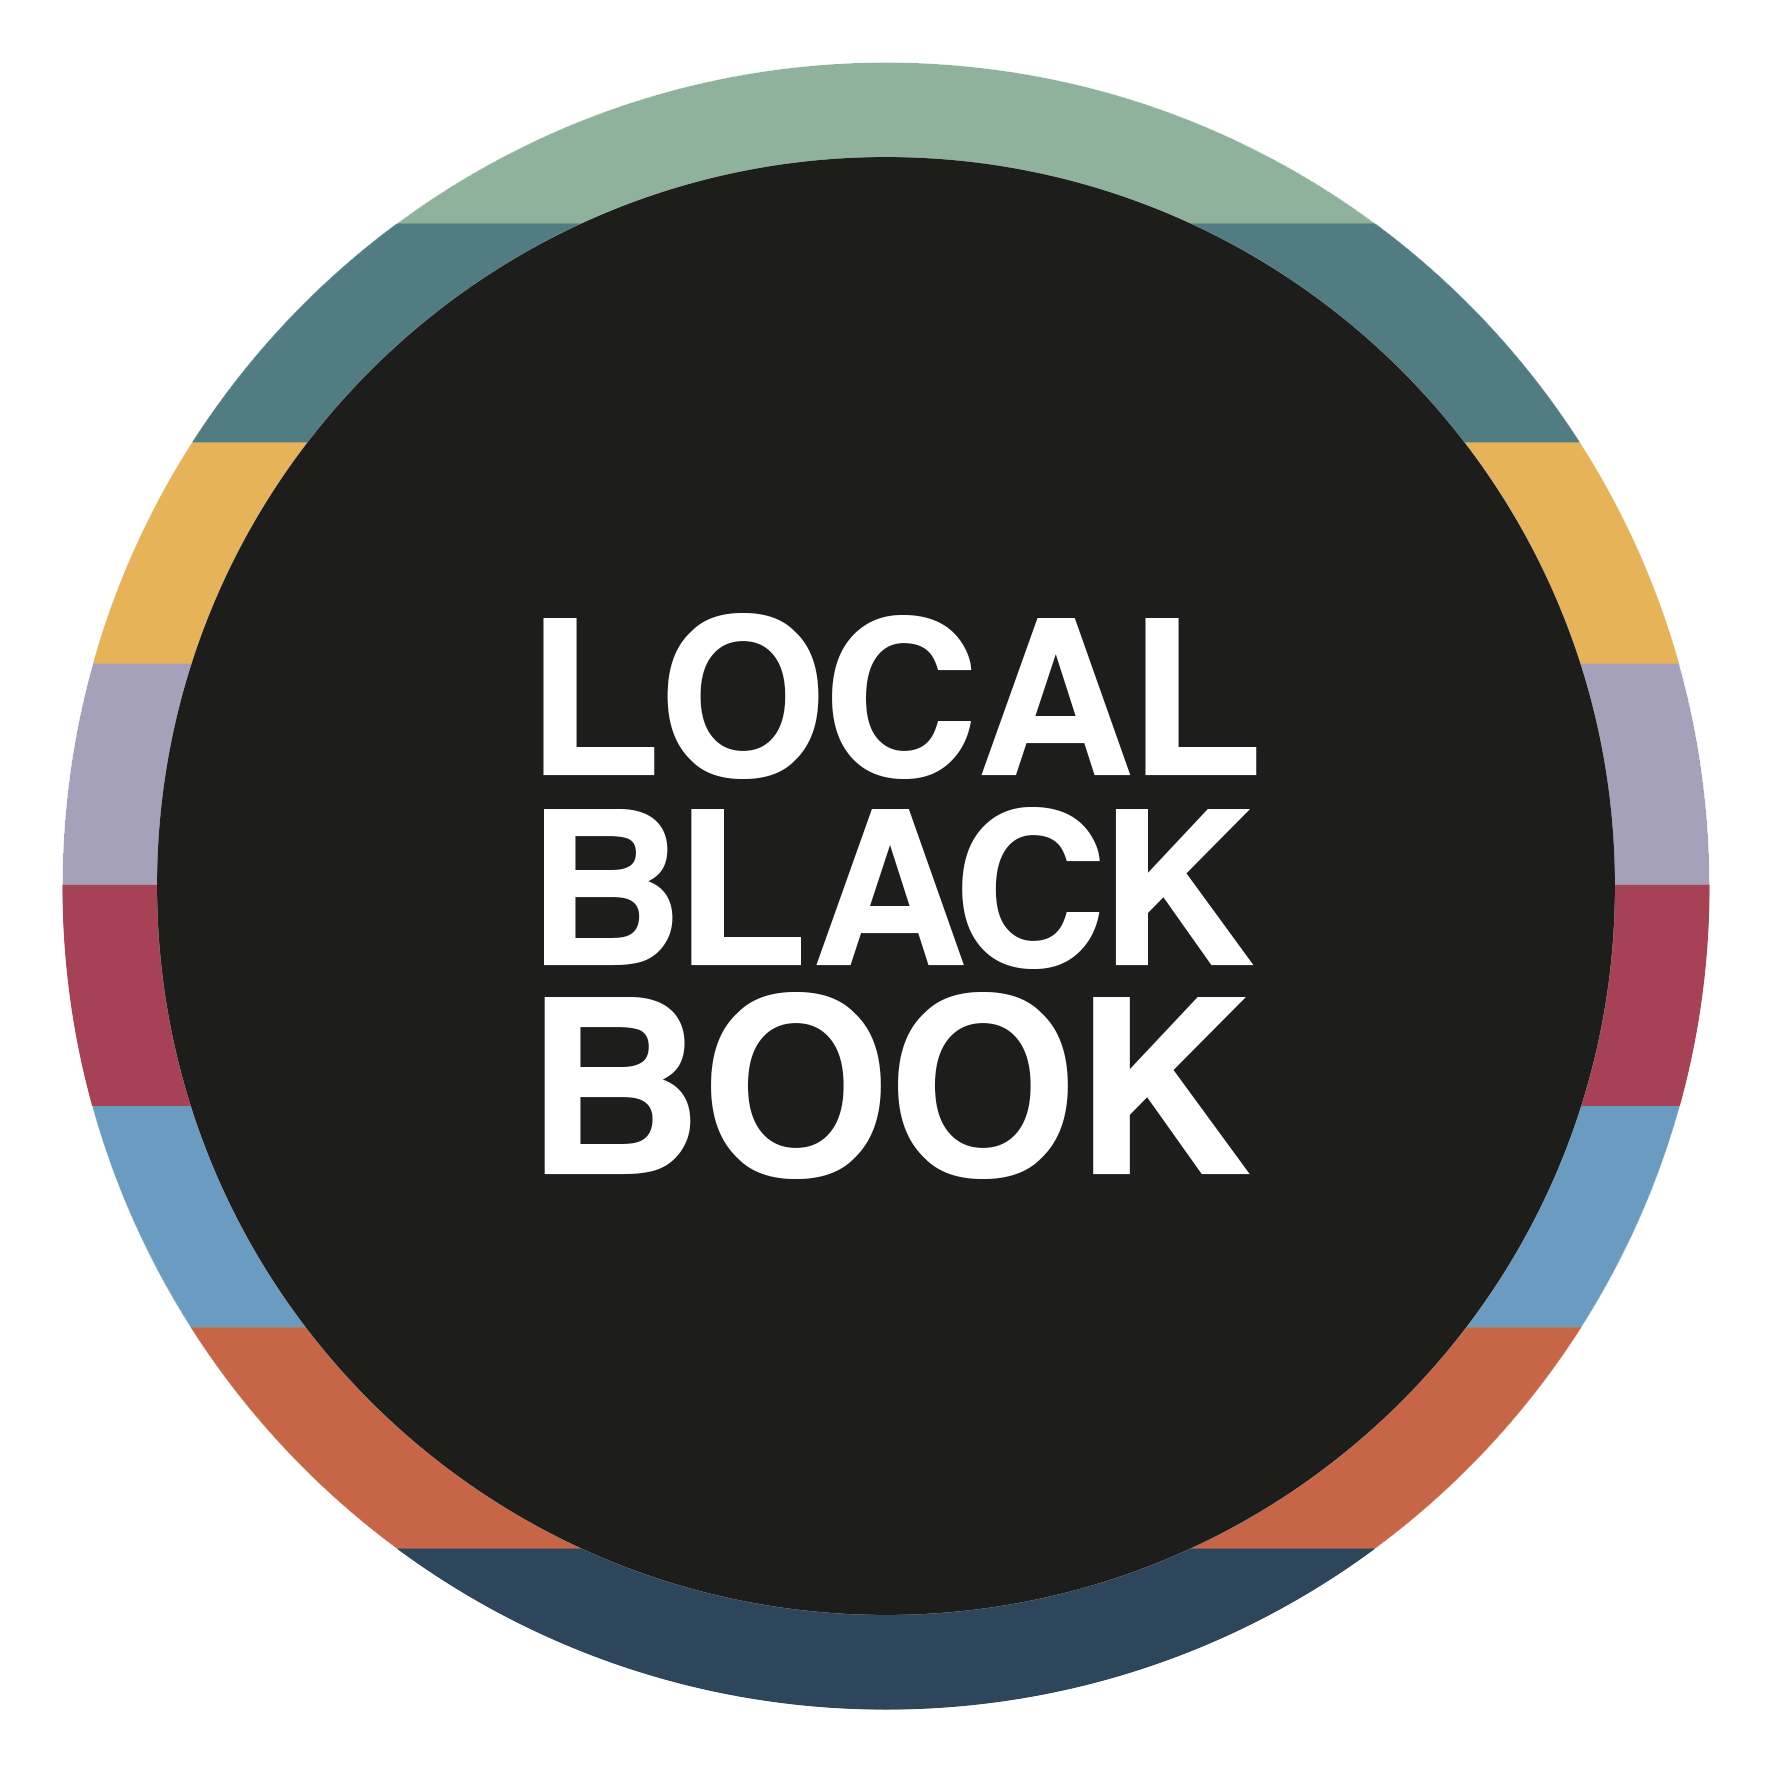 Local black book icon